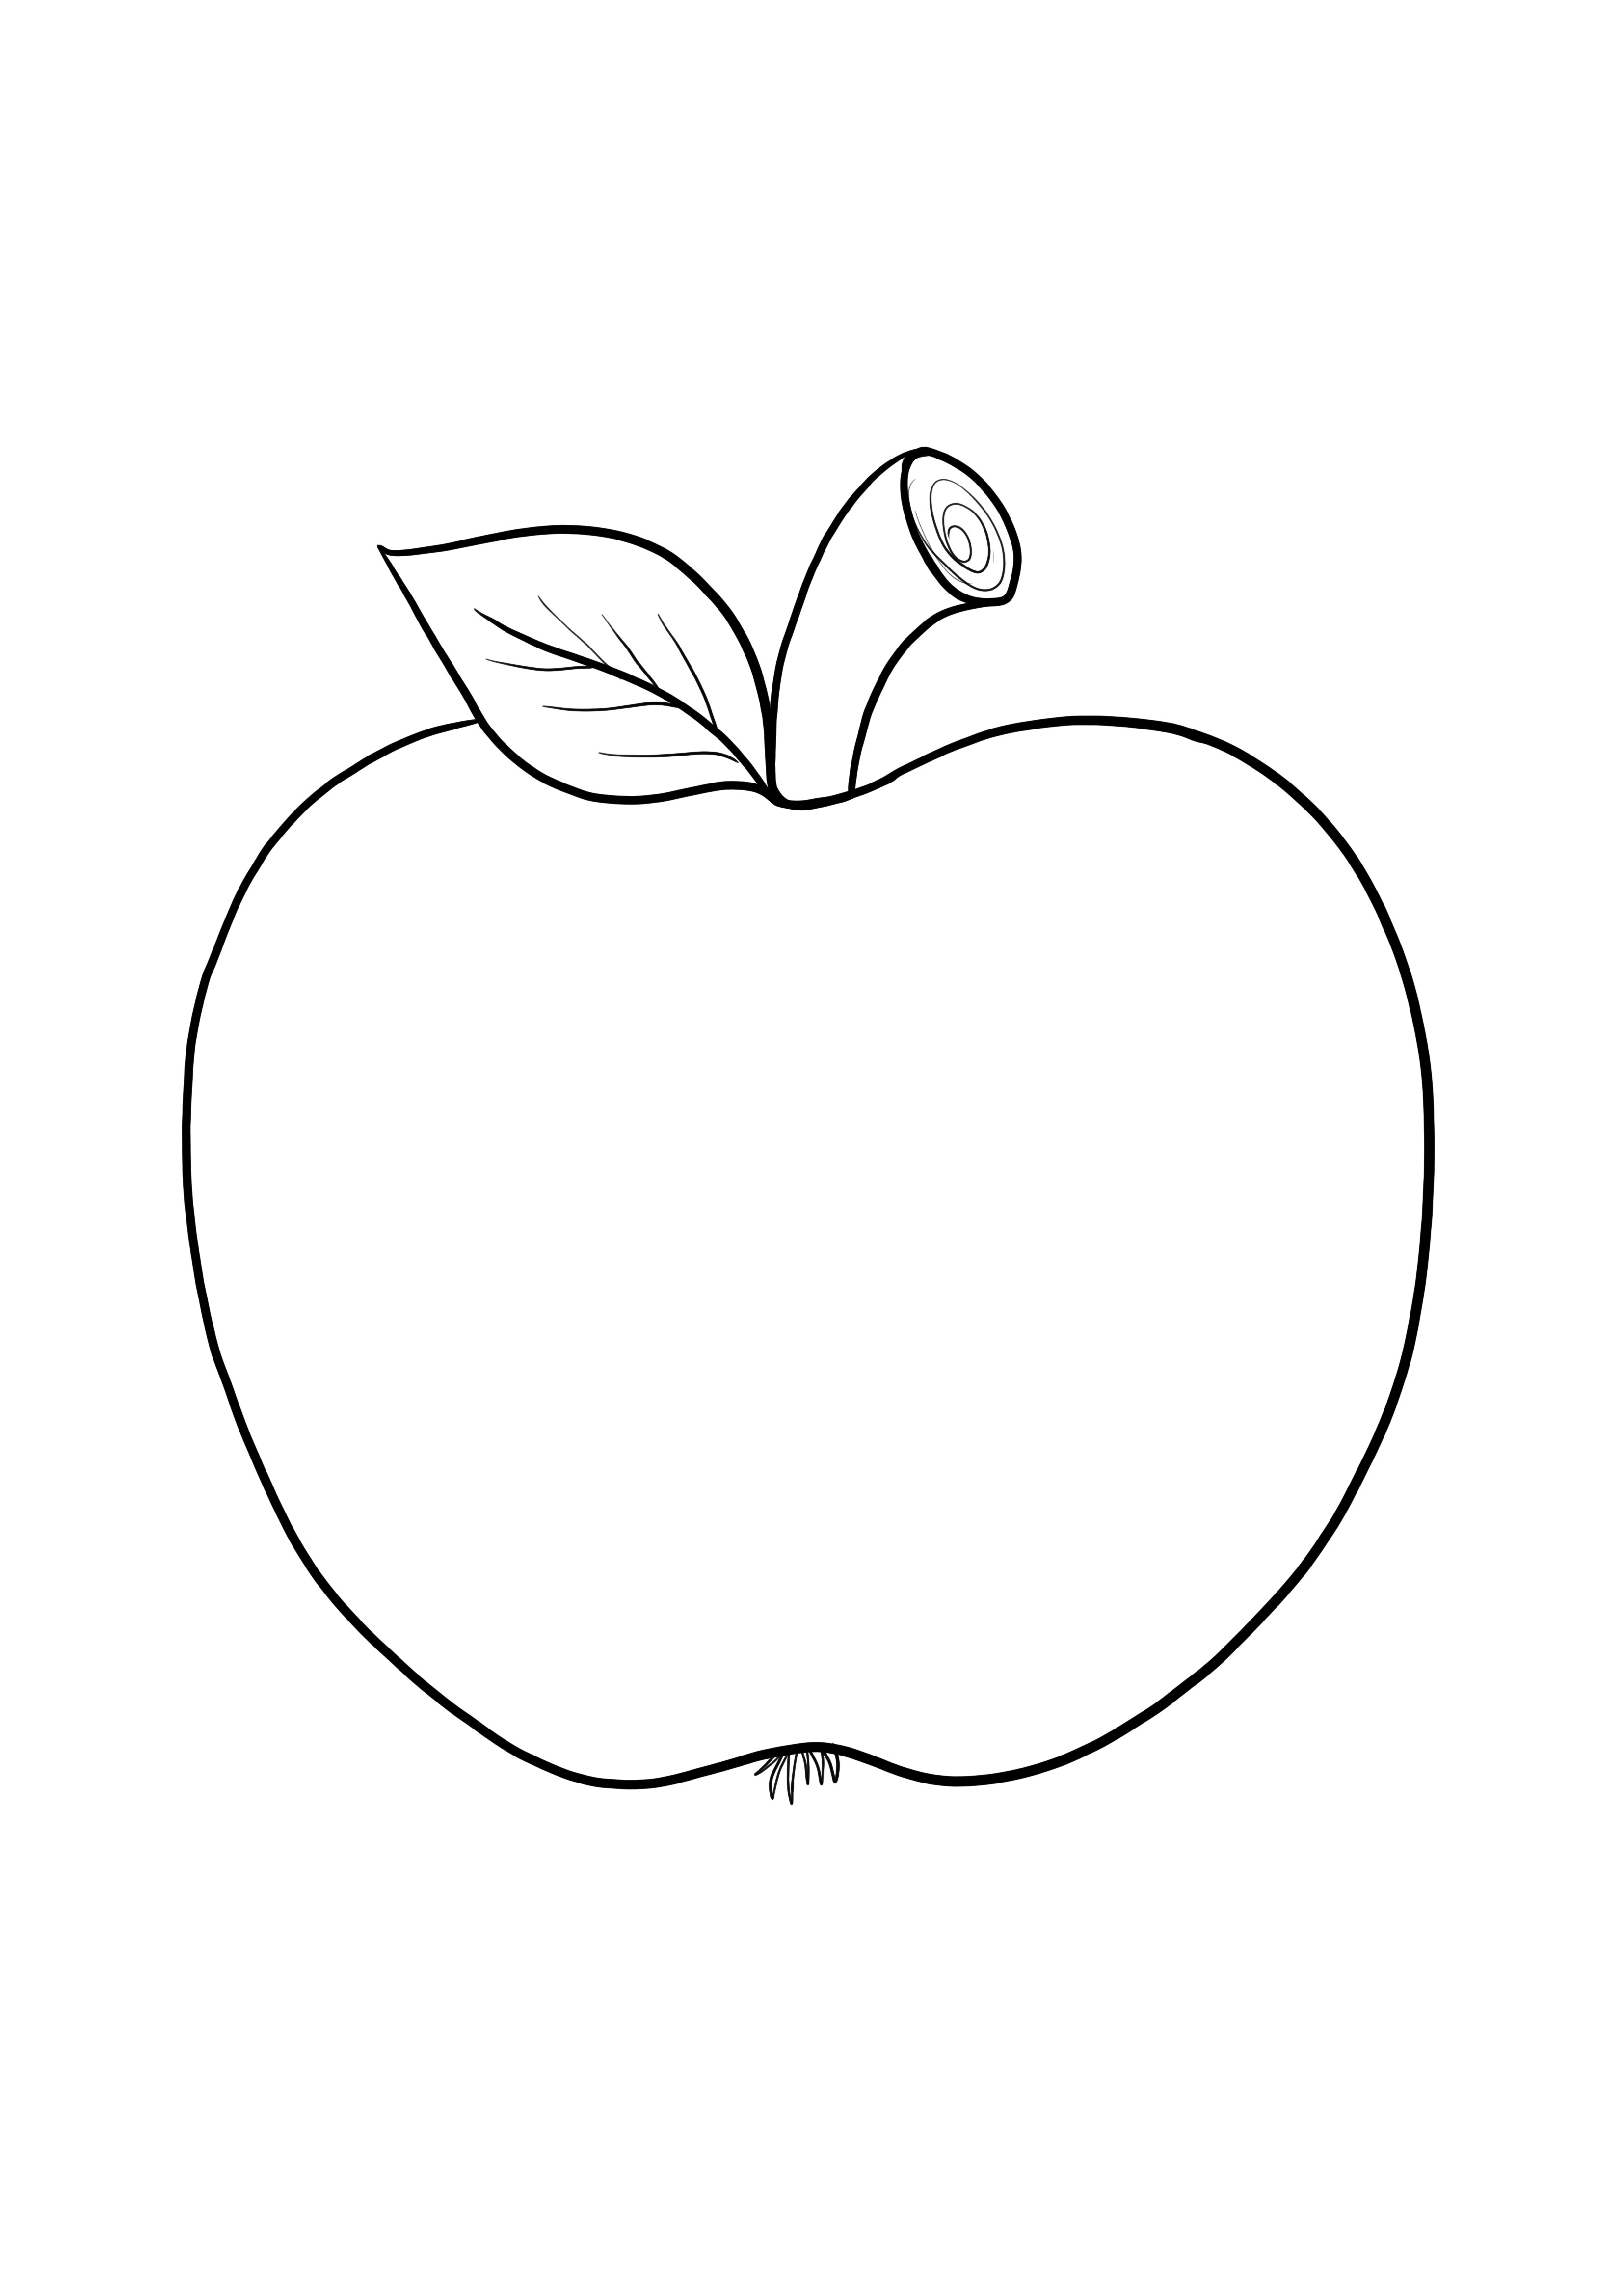 Egyszerű üres almakép a könnyű színezéshez, a gyerekek számára ingyenes nyomtatáshoz